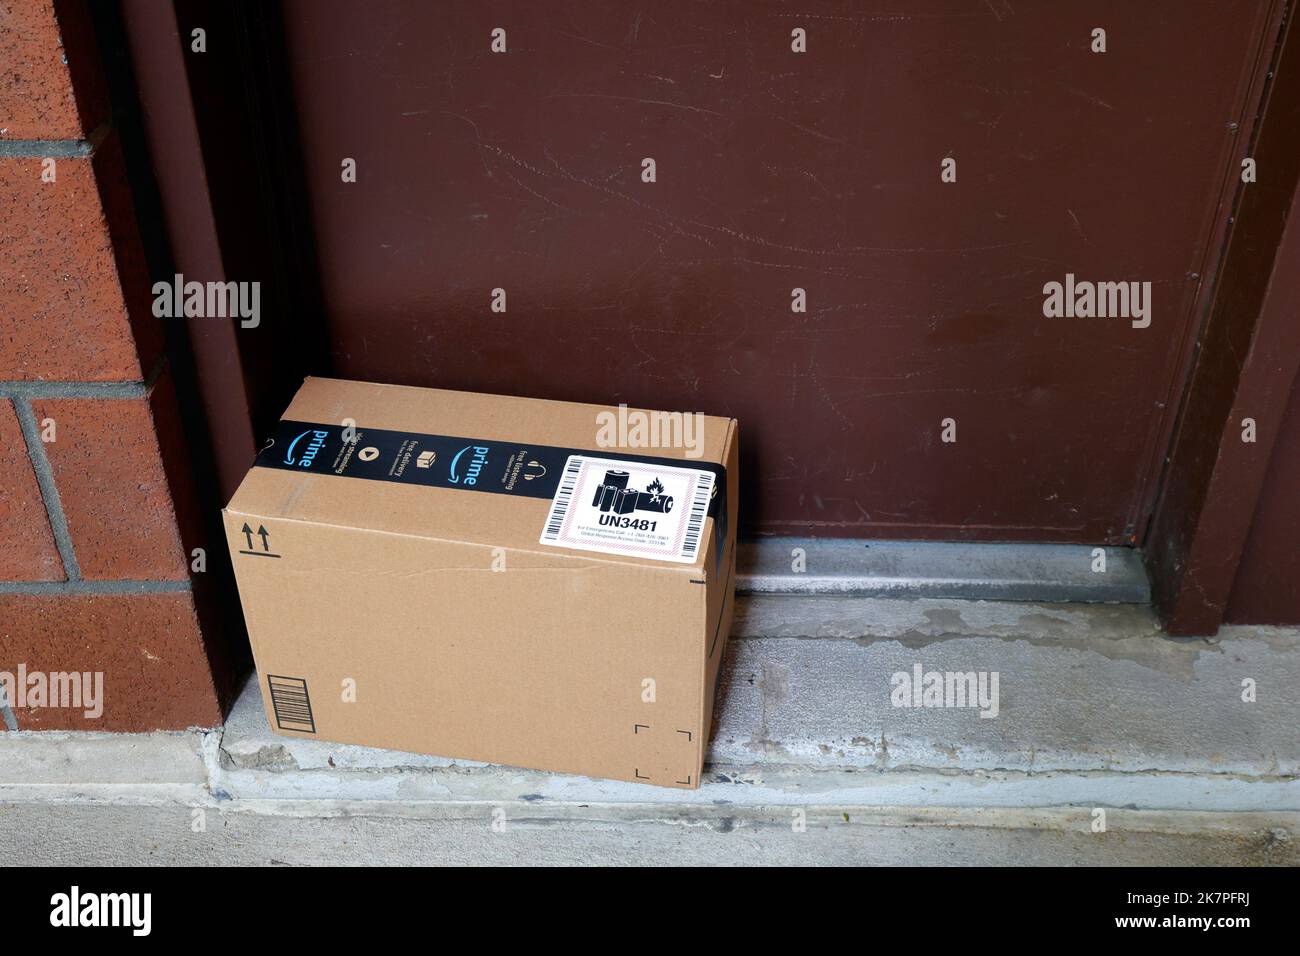 Una entrega de Amazon dejada en la puerta. Una pegatina UN 3481 en la caja de cartón que indica el contenido que contiene las baterías de iones de litio Foto de stock